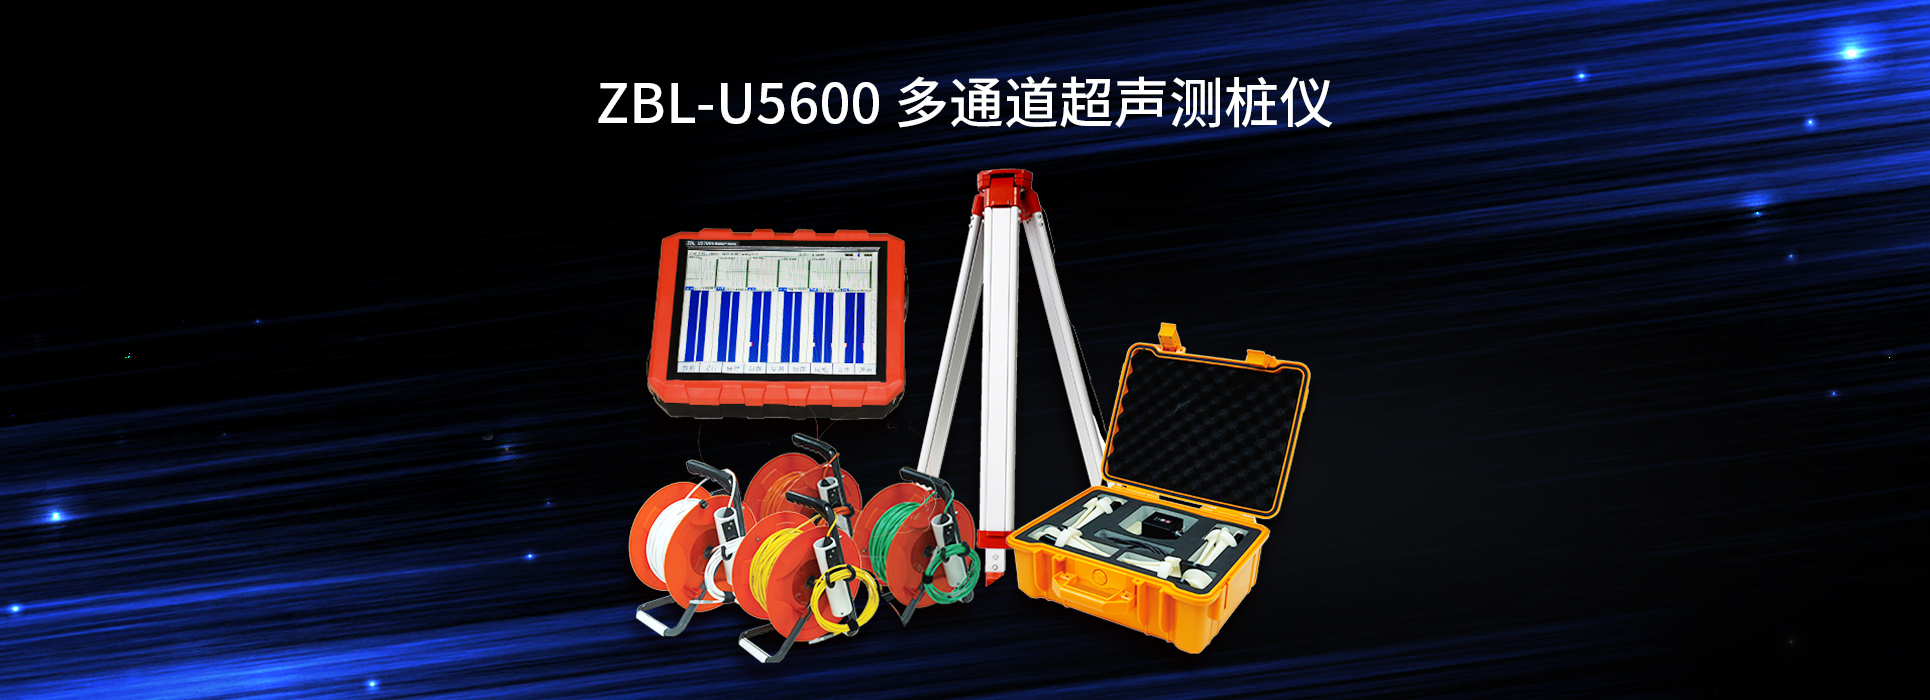 ZBL-U5600多通道超聲測樁儀